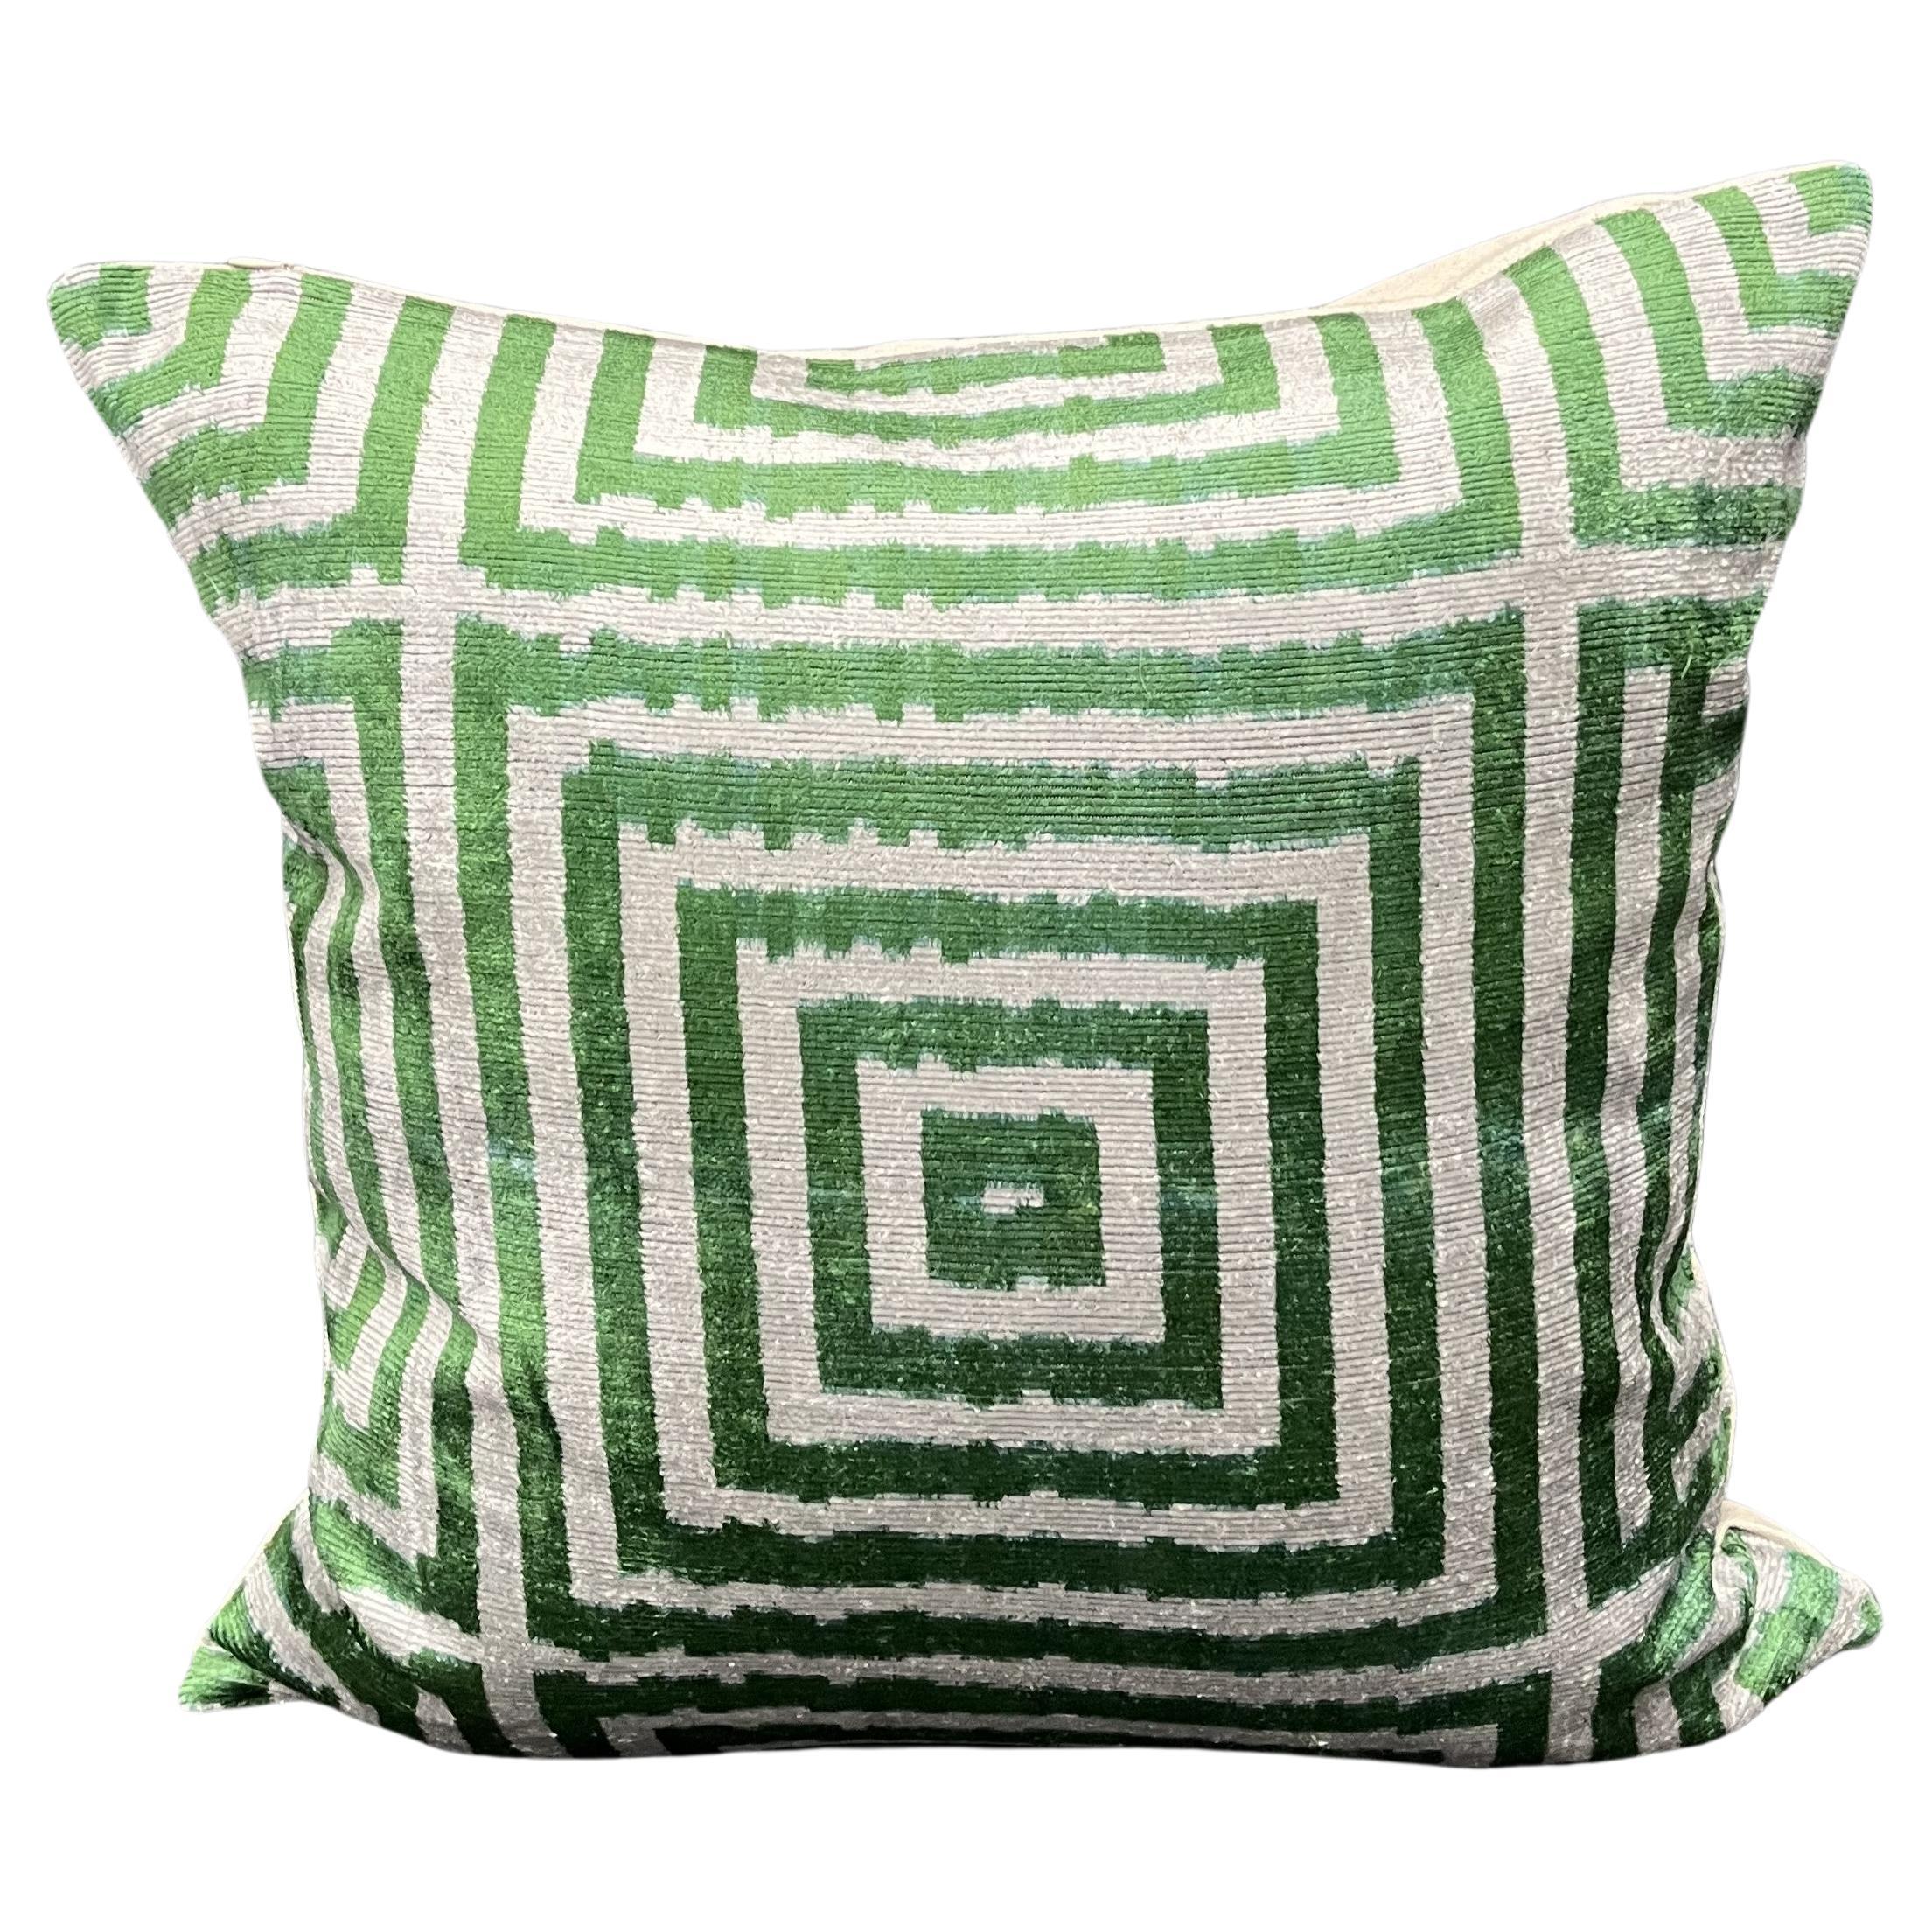 Velvet Silk Ikat Pillow Cover with Green Geometric Stripe Design 20" x 20"